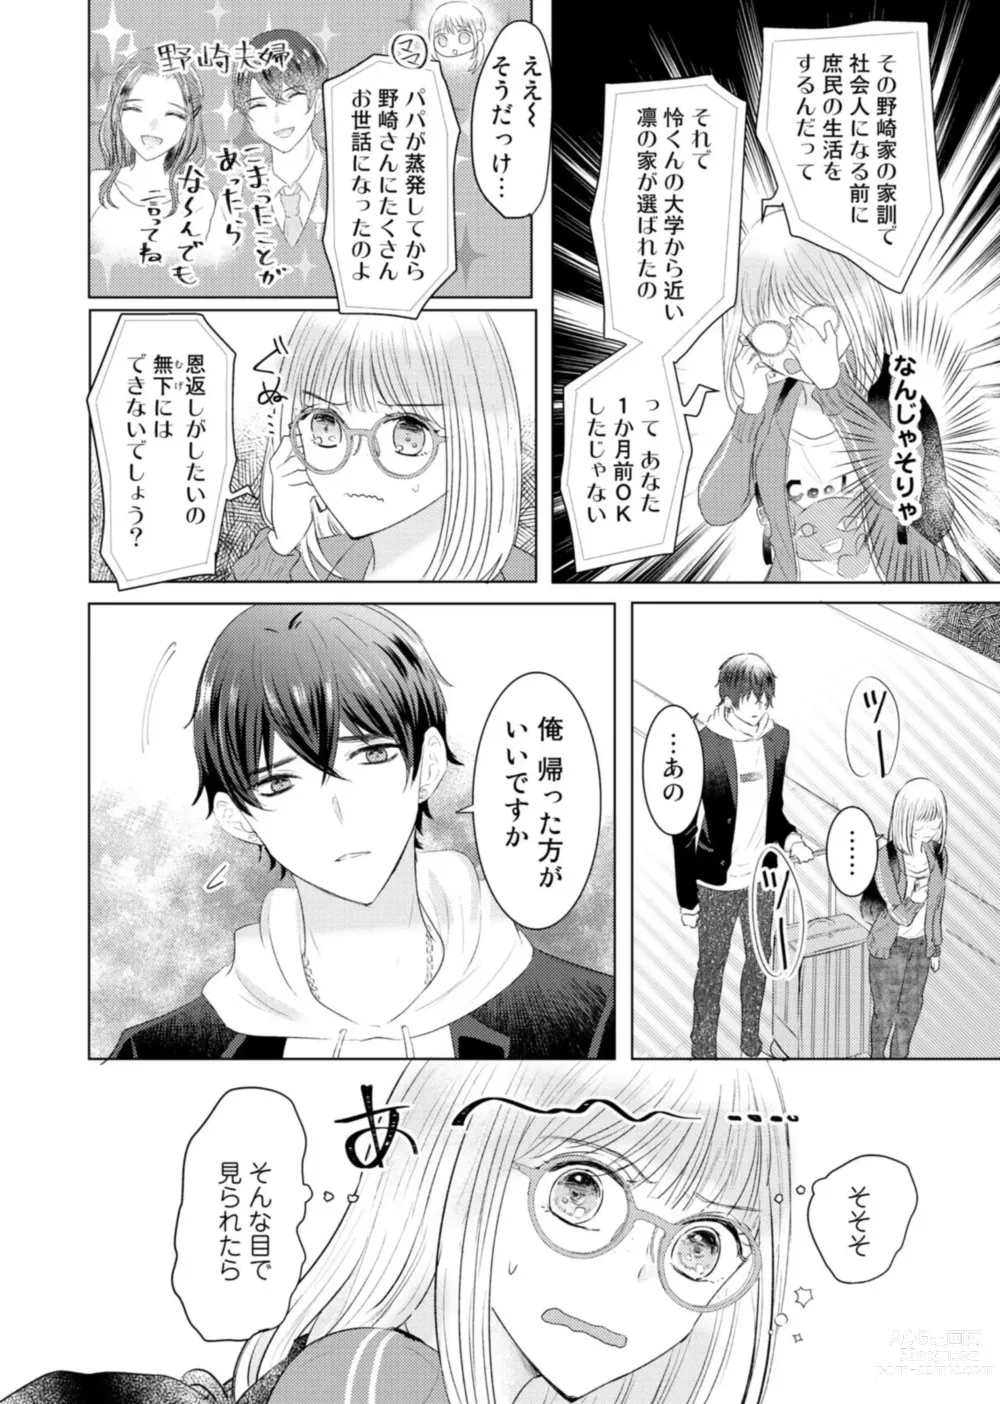 Page 6 of manga Nozaki-kun no Shūchaku ai wa, Atsukute Okkī.~ Amaku Midarana Dōsei Sex ~ 1